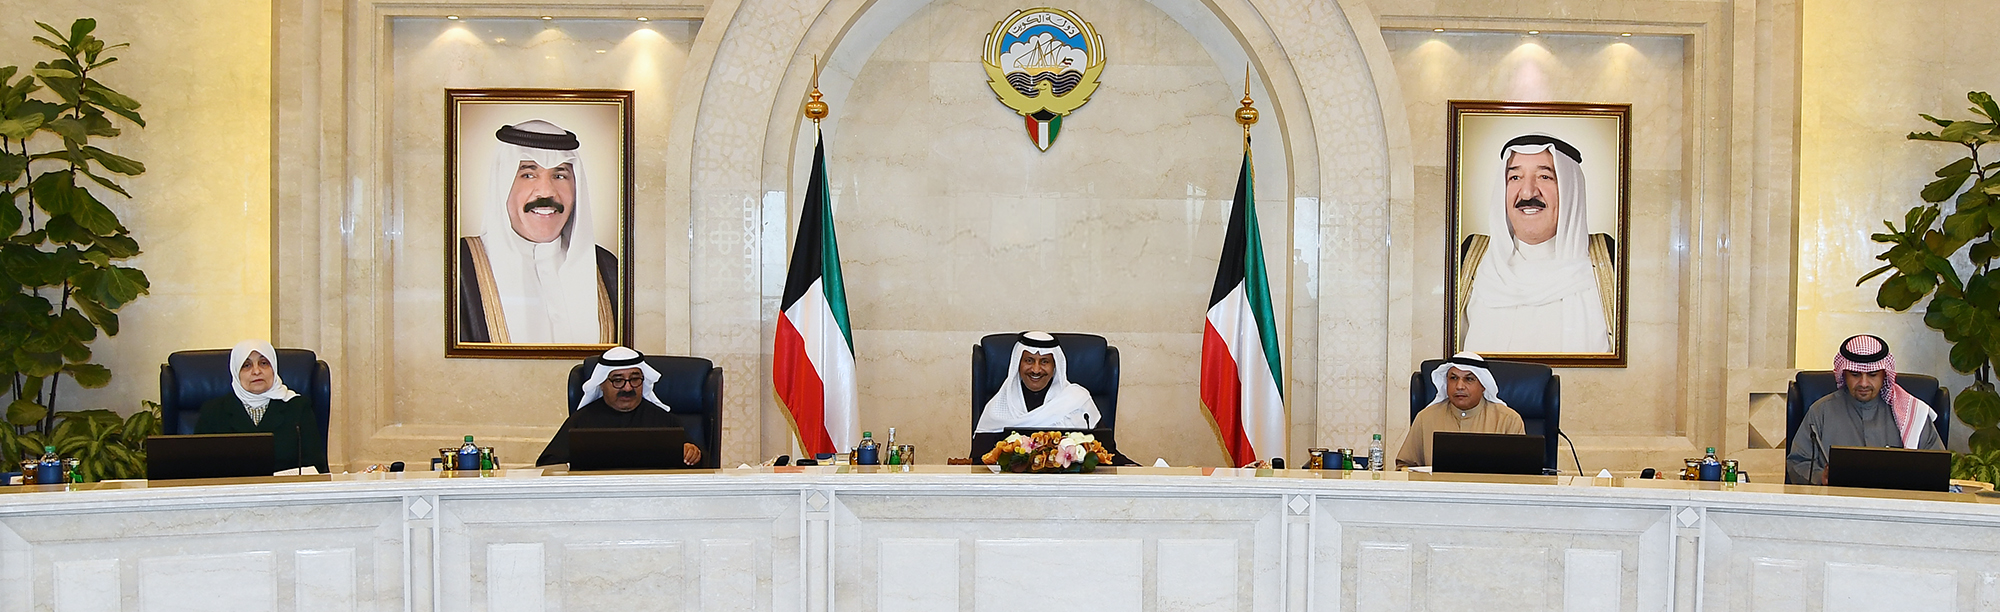 سمو الشيخ جابر المبارك الحمد الصباح رئيس مجلس الوزراء يترأس الاجتماع الأسبوعي لمجلس الوزراء